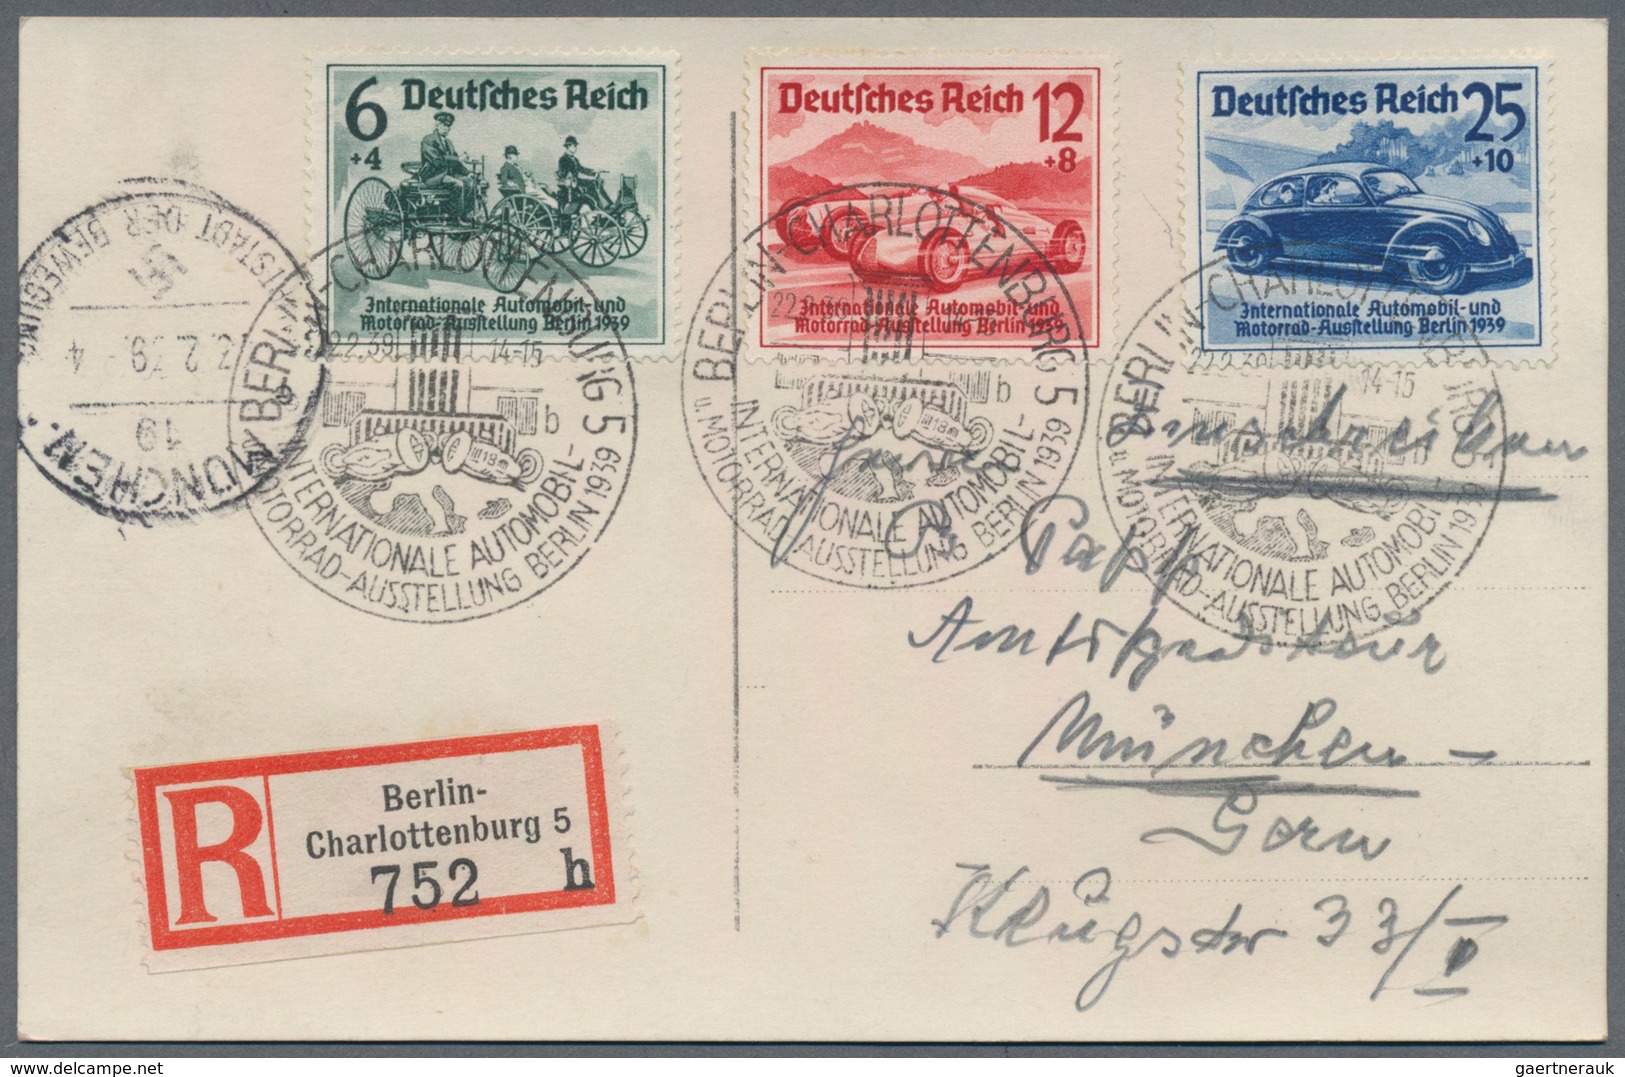 Deutschland: 1860-1950, Partie mit geschätzt 400 Briefen und Belegen ab Altdeutschland, zumeist Dt.